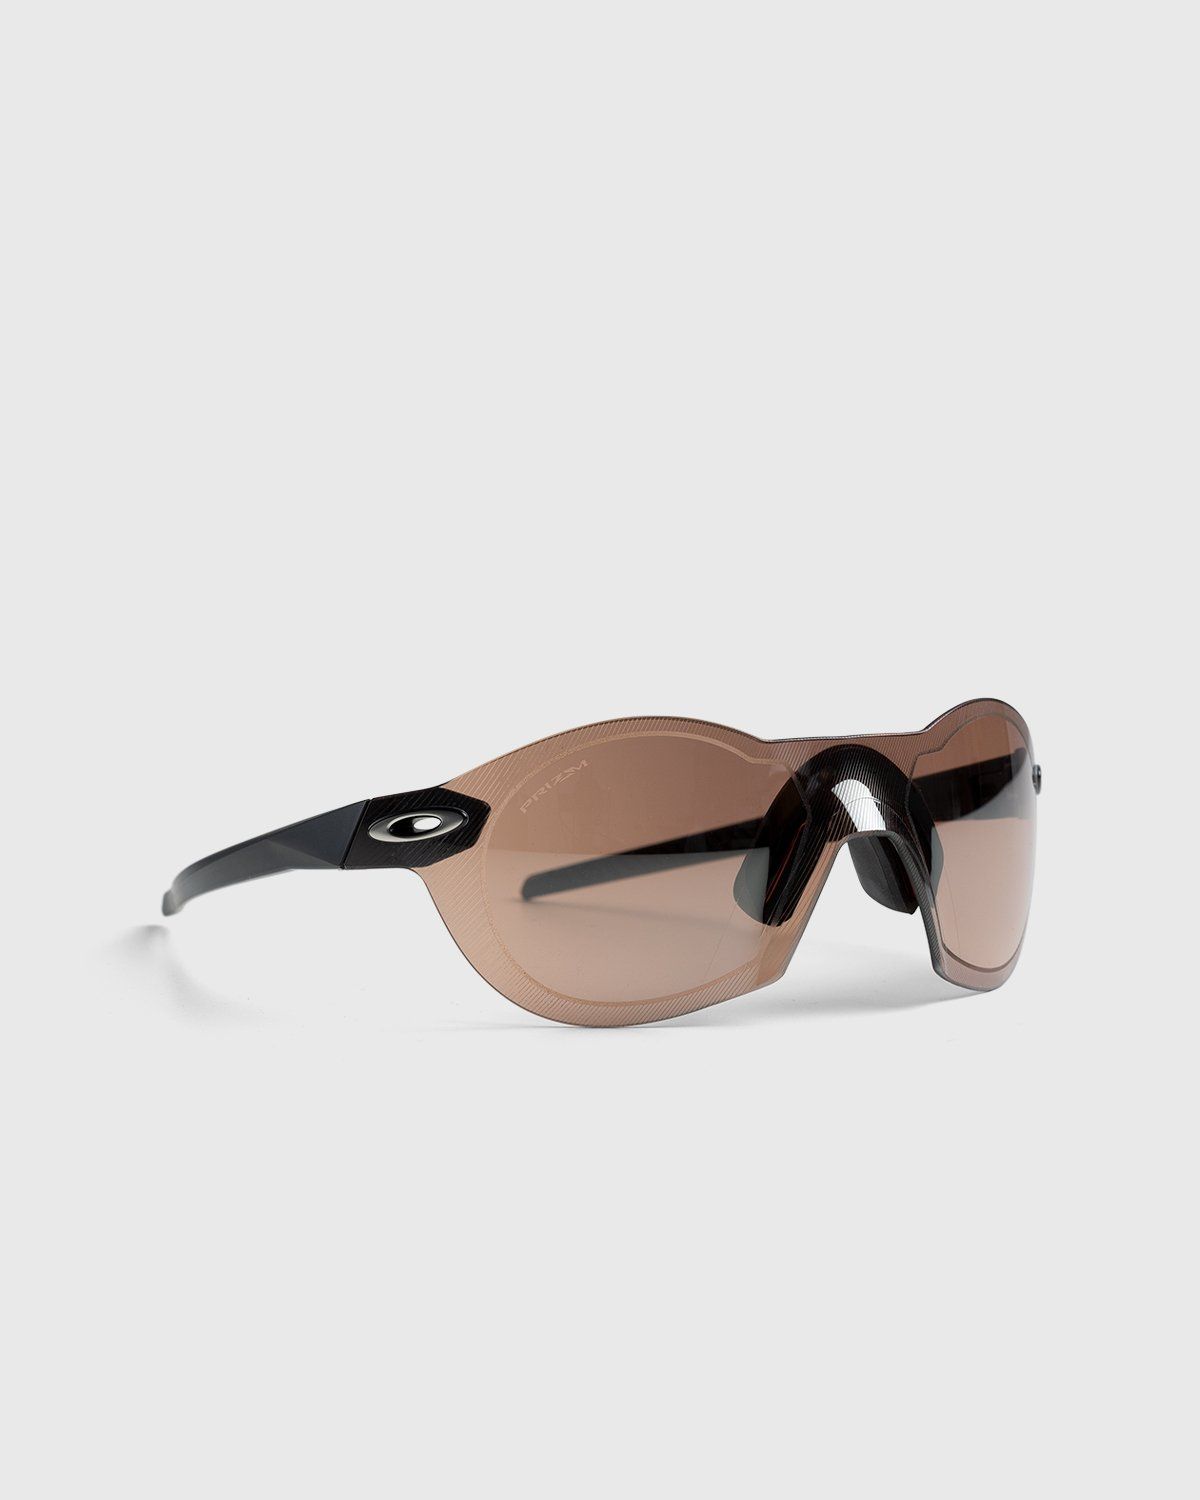 Oakley – Re:SubZero MT Black Prizm Dark Golf - Sunglasses - Brown - Image 2